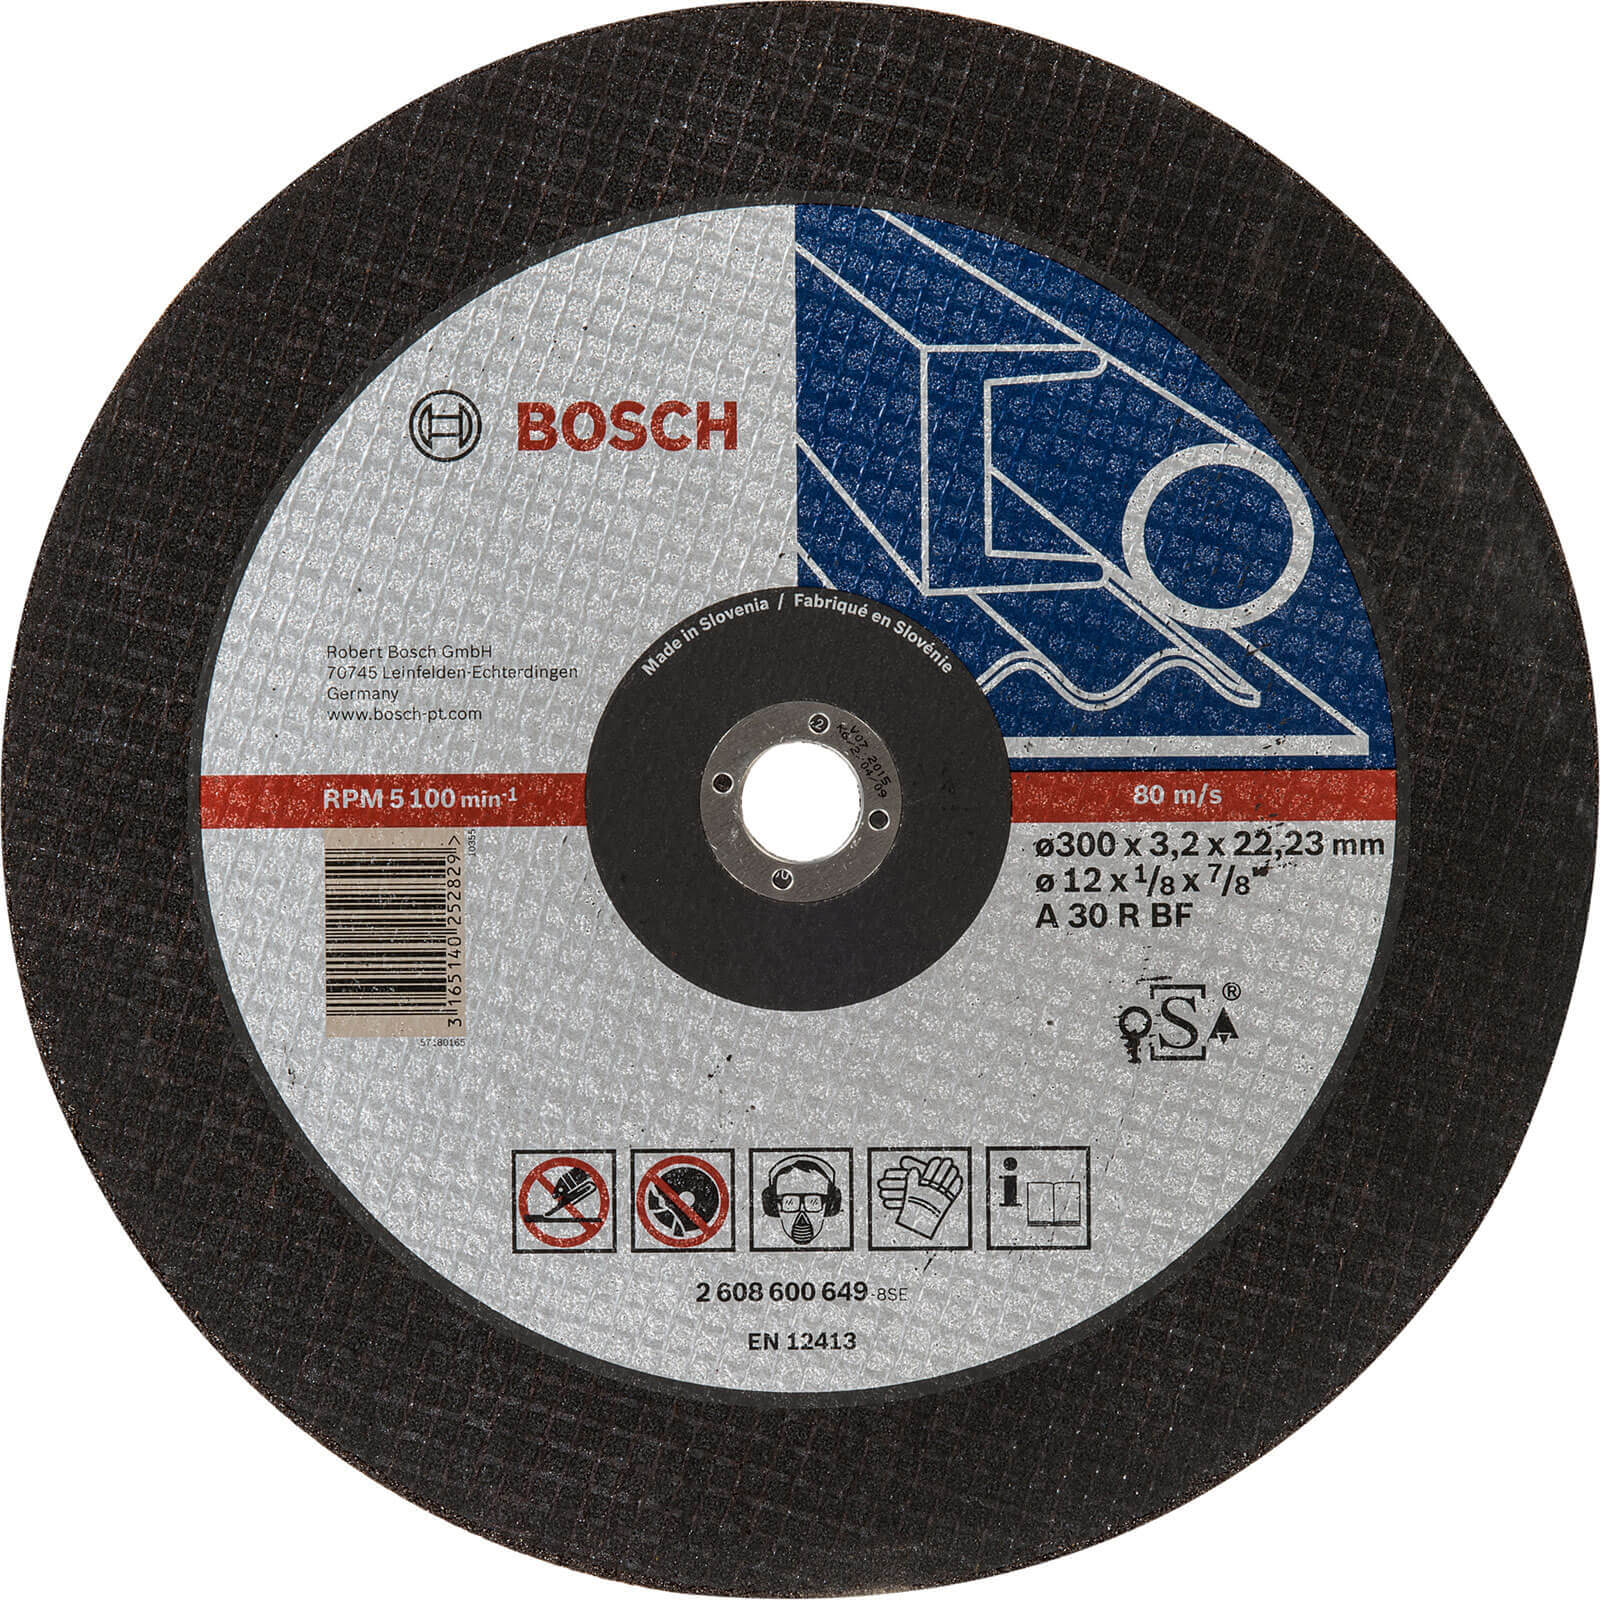 Photo of Bosch Expert A30s Bf Flat Metal Cutting Disc 300mm